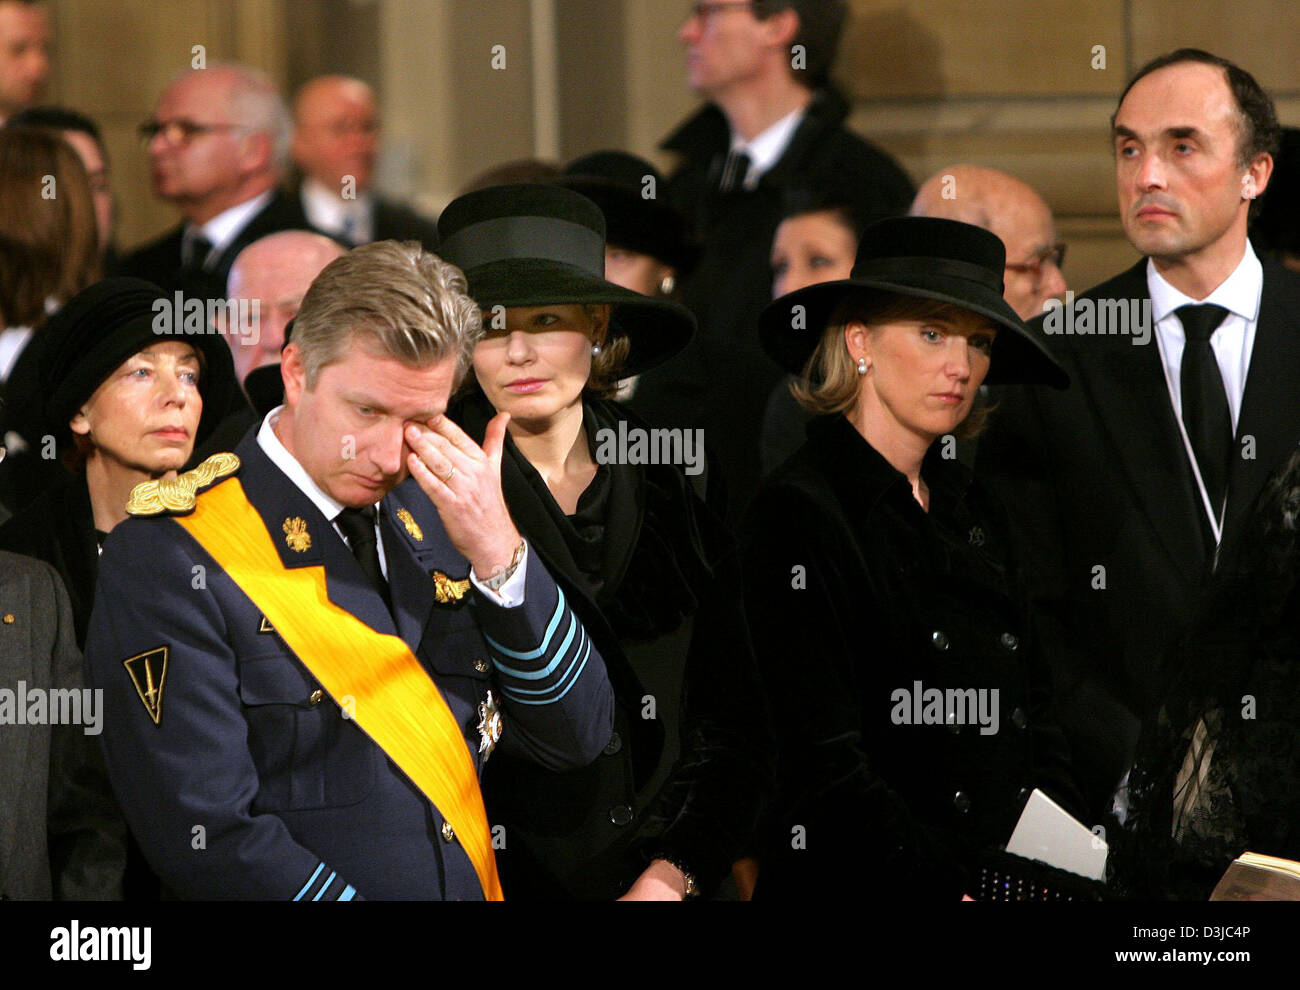 (Dpa) - (L-R): El Príncipe heredero Philippe y la corona de la princesa Mathilde de Bélgica, la Princesa Astrid y el príncipe Lorenz, el Archiduque de Austria, asistir a los funerales de la Gran Duquesa Josefina-Carlota de Luxemburgo en la catedral de Luxemburgo, el 15 de enero de 2005. La Gran Duquesa murió de un cáncer de pulmón a la edad de 77 años el 10 de enero de 2005. Foto de stock